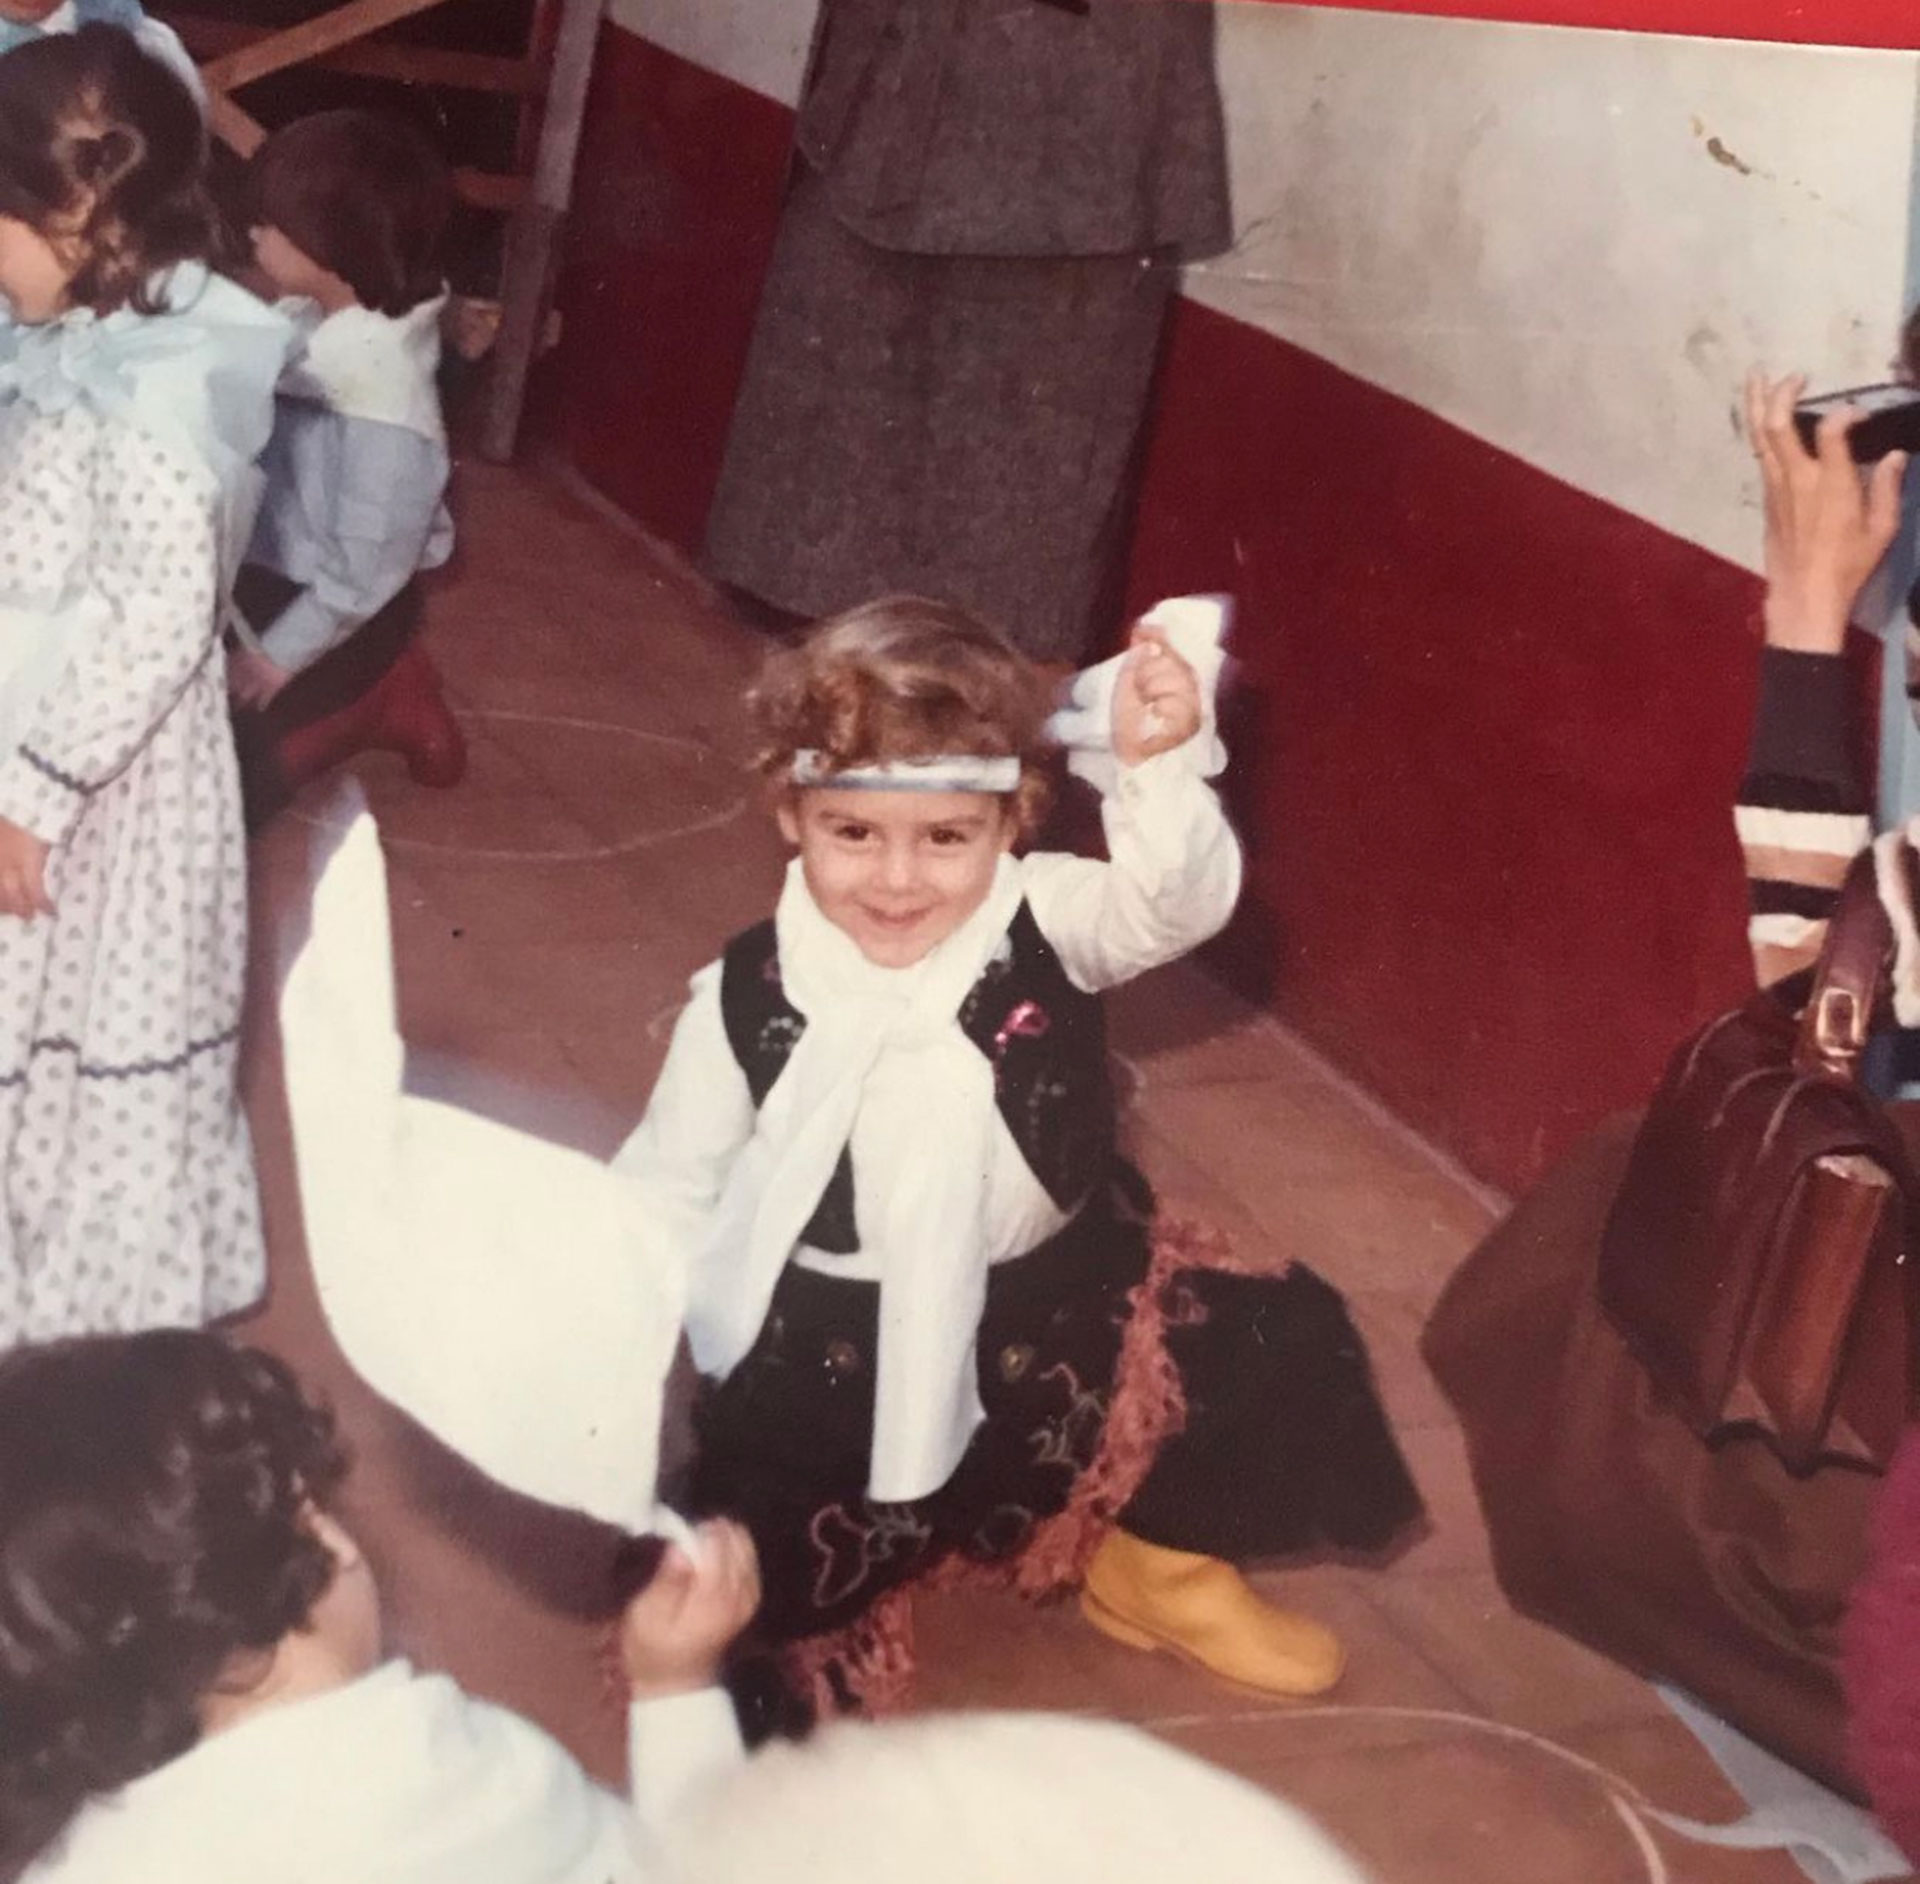 Muscari ya disfrutaba de sus actuaciones preescolares en 1980